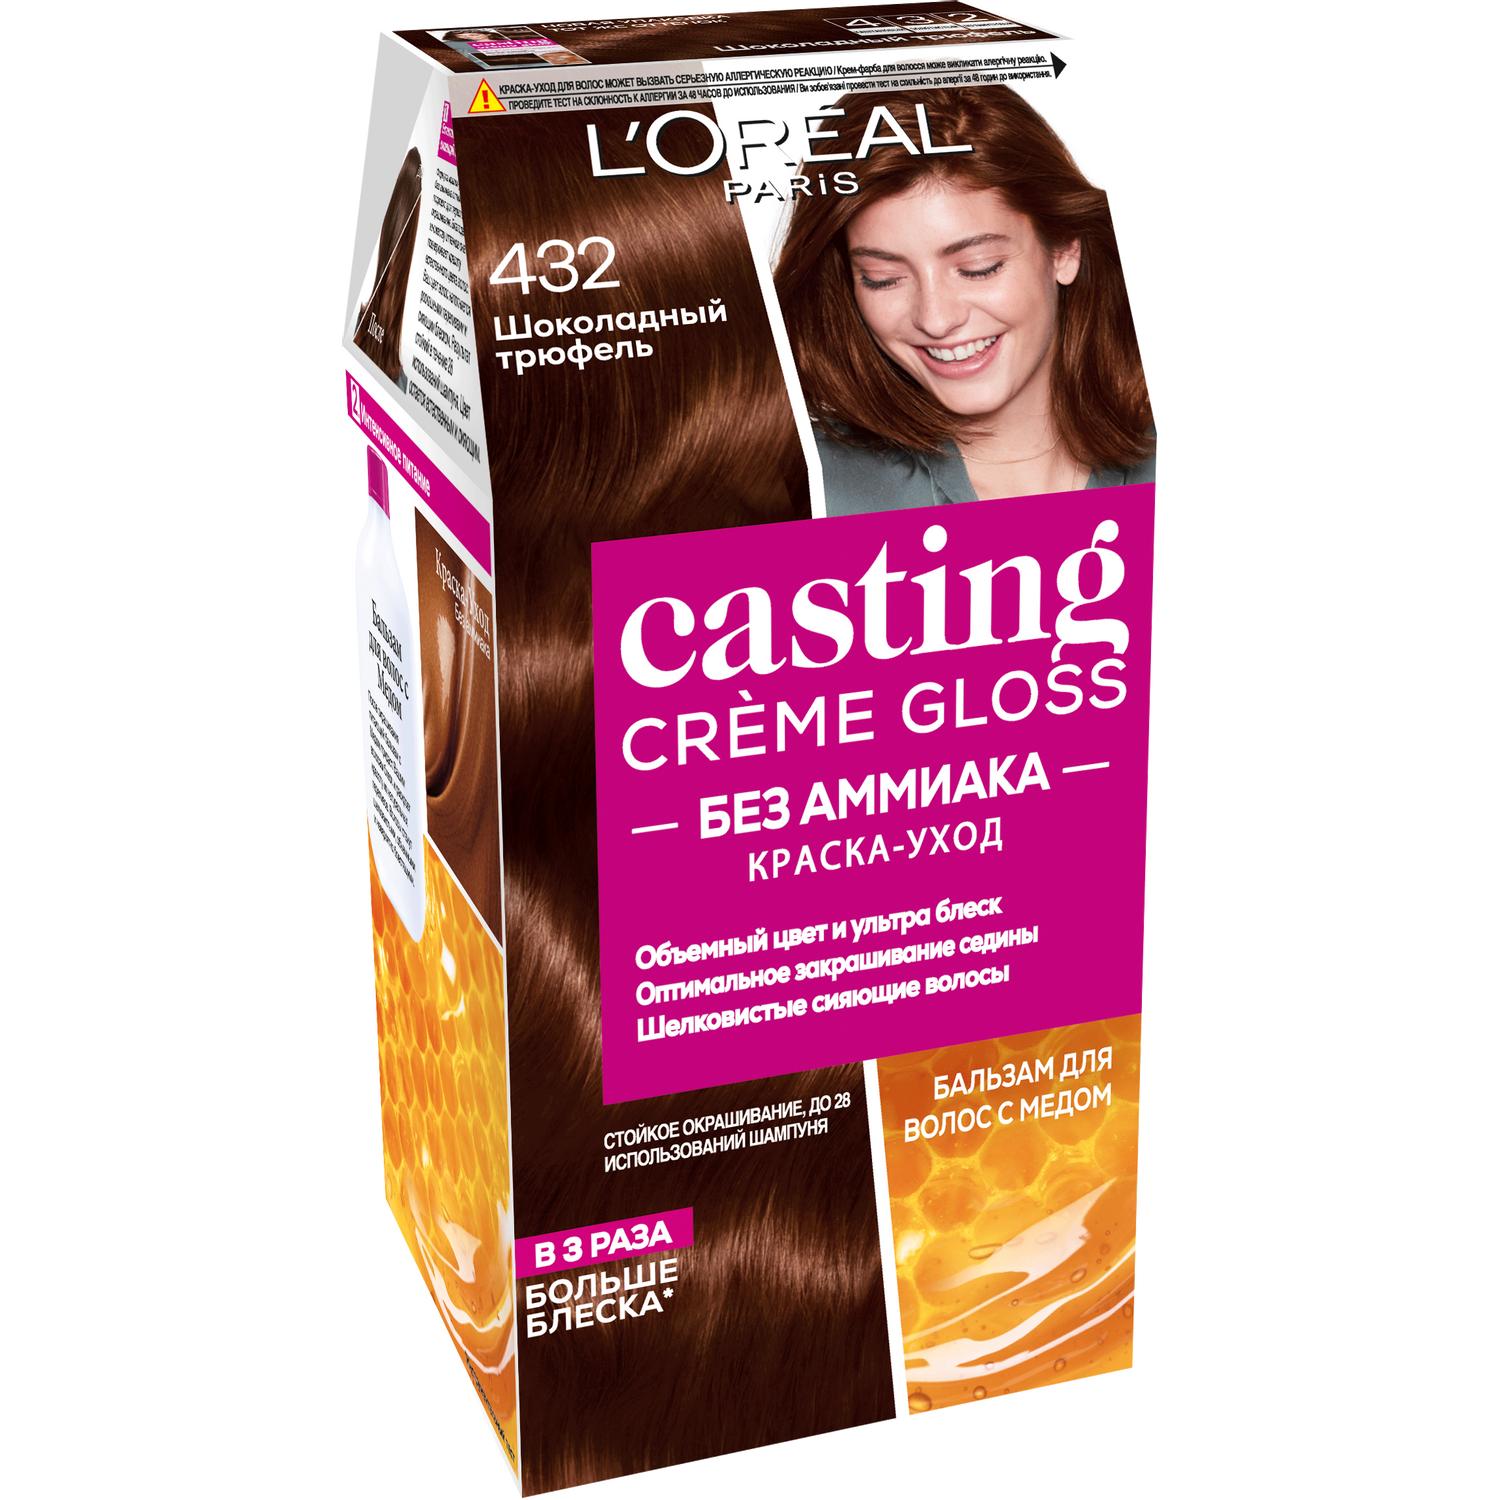 фото Краска для волос l'oreal paris casting creme gloss 432 шоколадный трюфель l'oréal paris